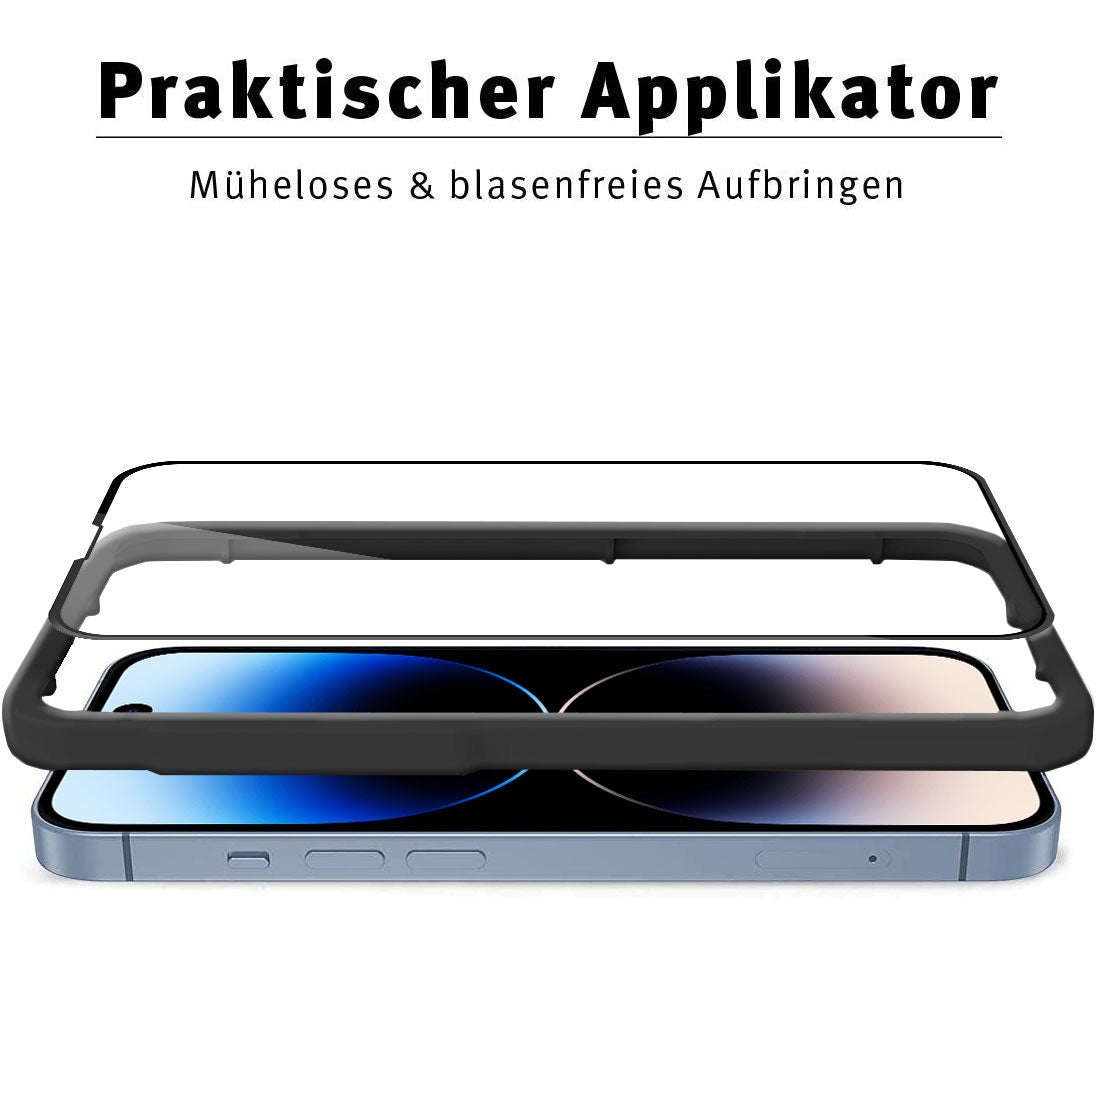 ArktisPRO iPhone 14 Pro FULL COVER Displayschutz GLAS - hüllenfreundlich - 2er Set